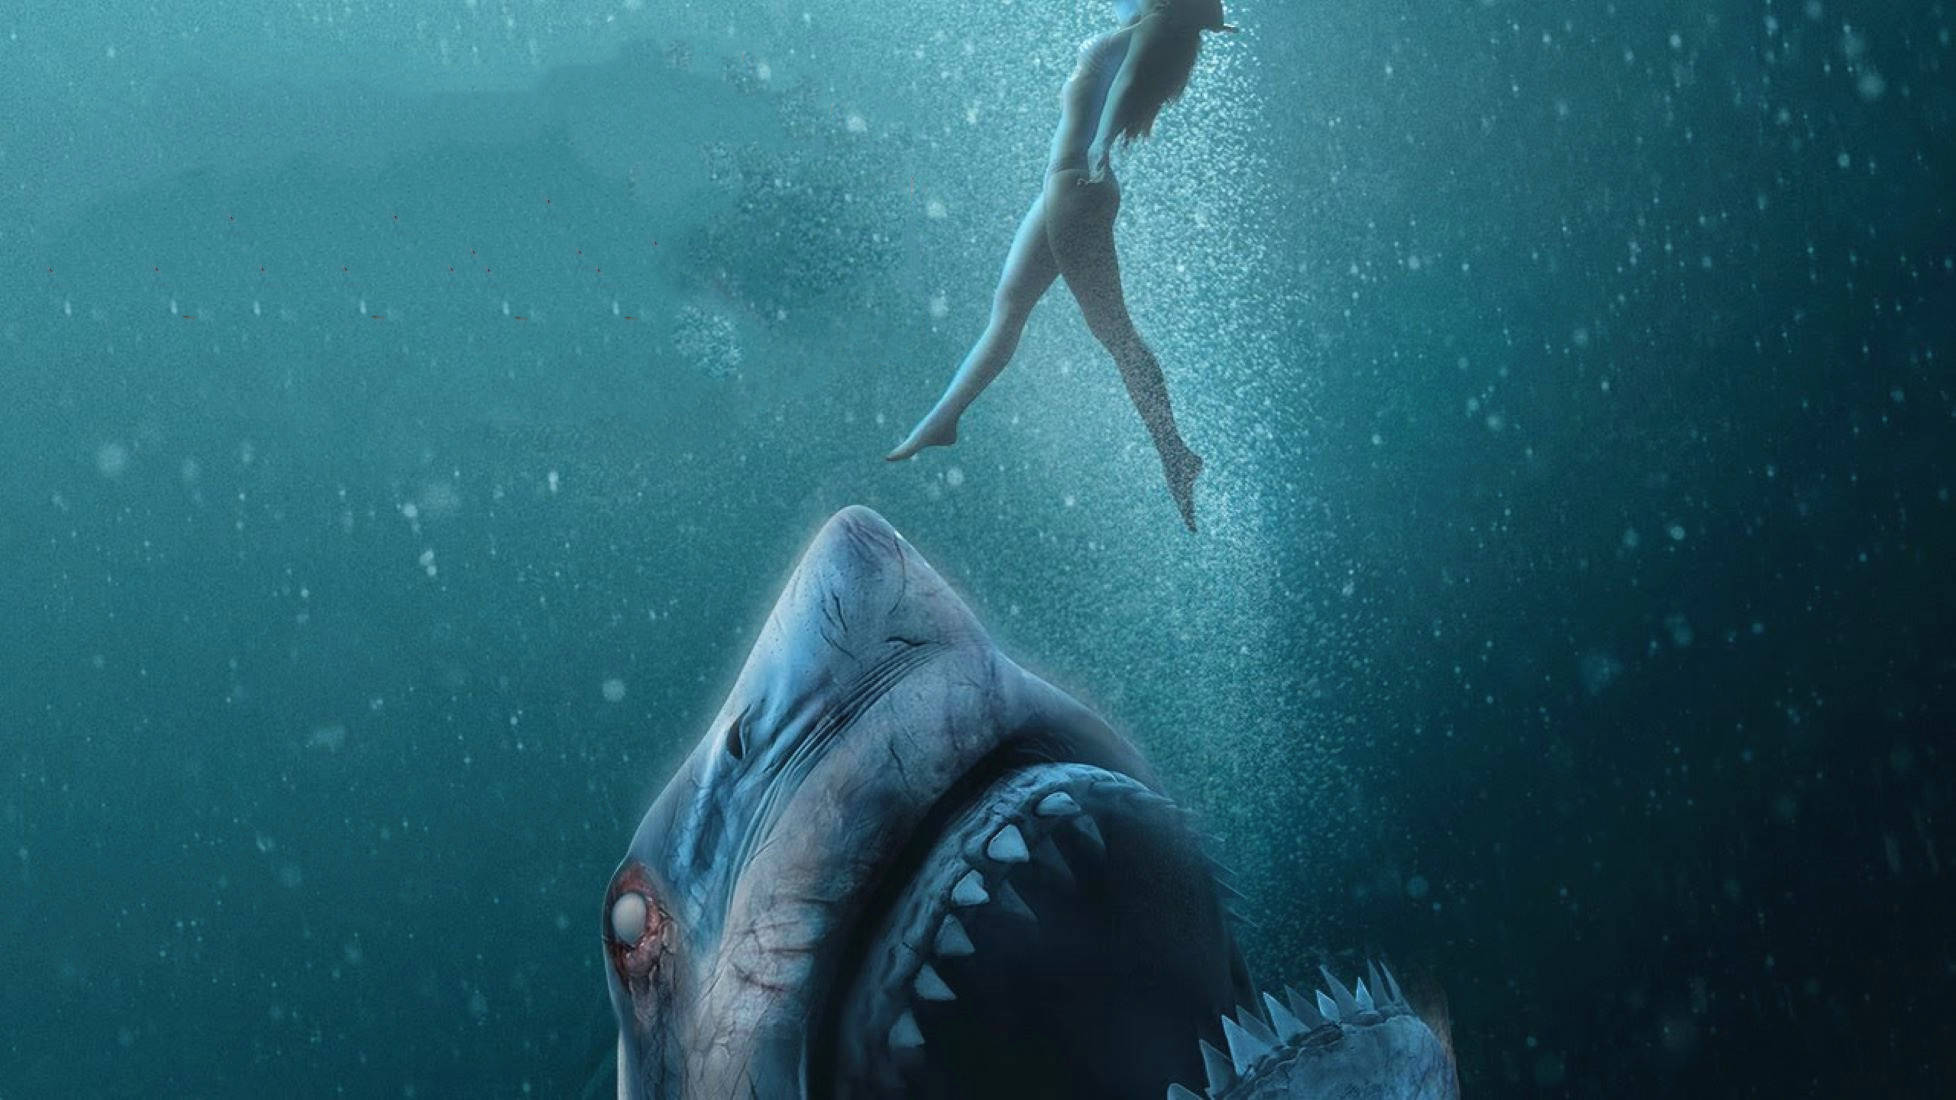 原创探索水下二战潜艇,却被一群鲨鱼猎杀,最新鲨鱼电影《沉船》